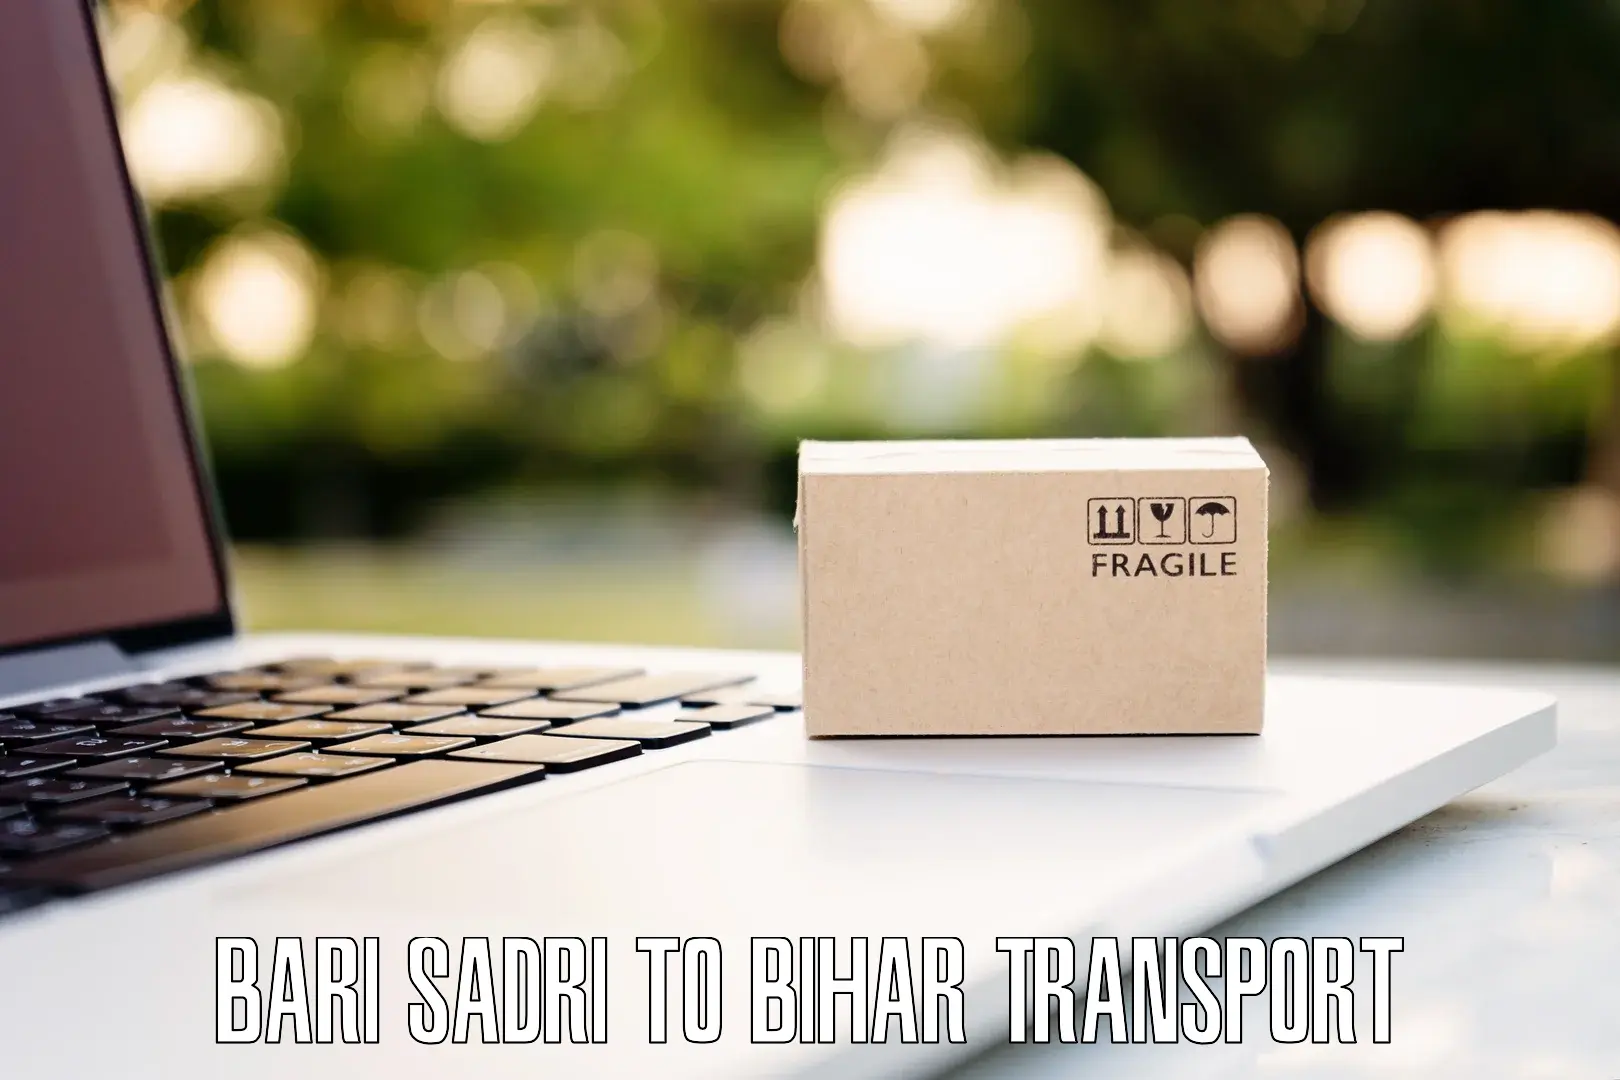 Air cargo transport services Bari Sadri to Fatwah